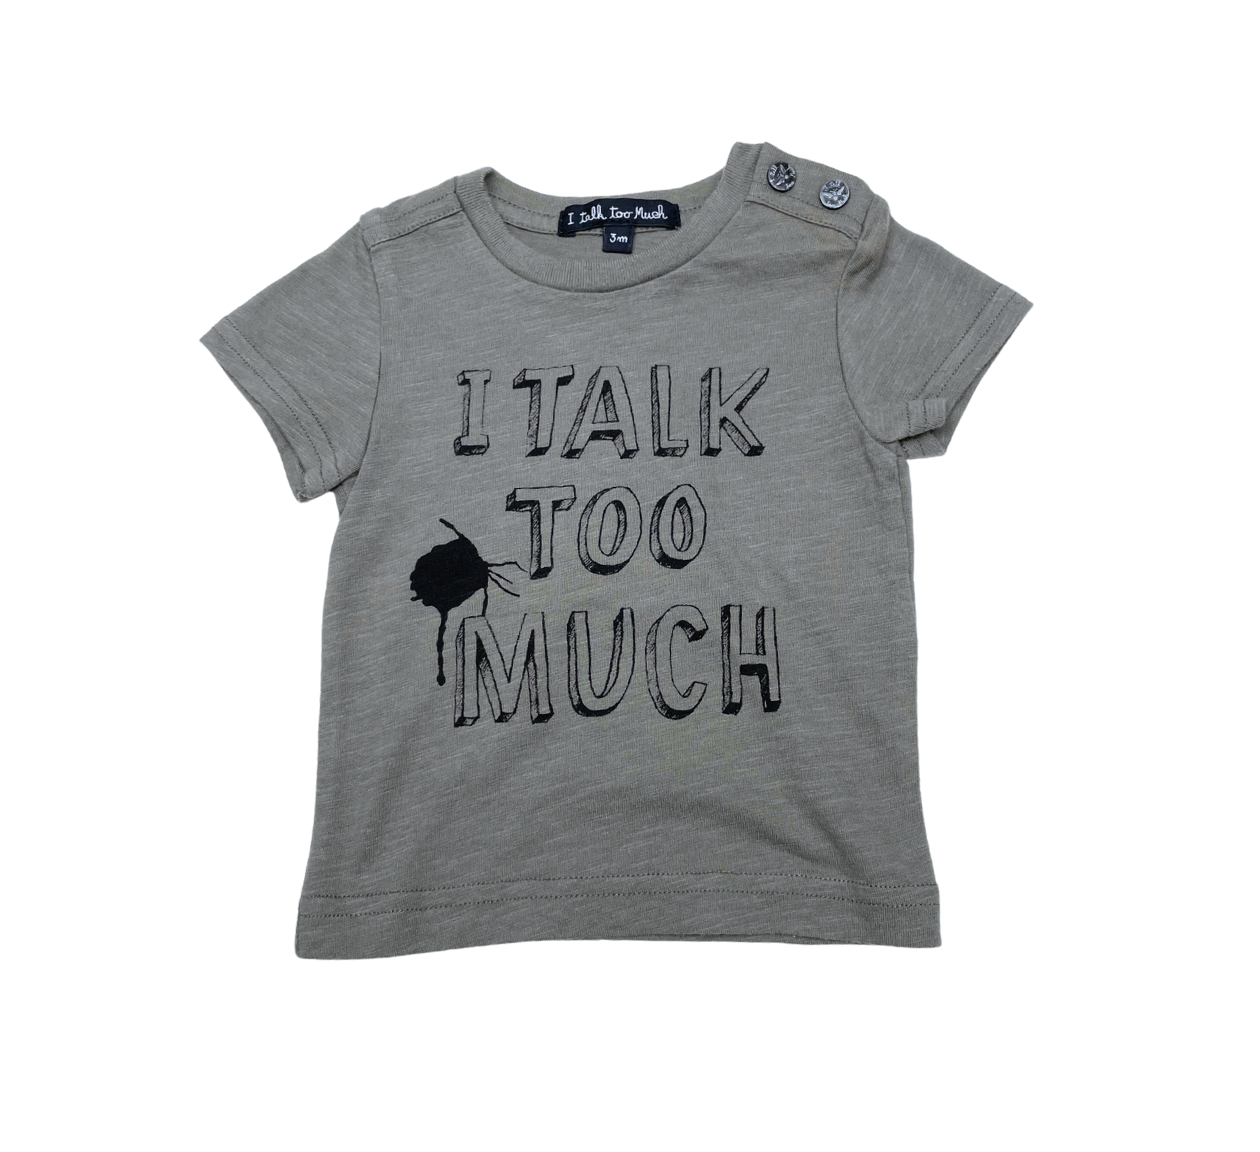 I TALK TO MUCH - T-shirt kaki - 3 mois